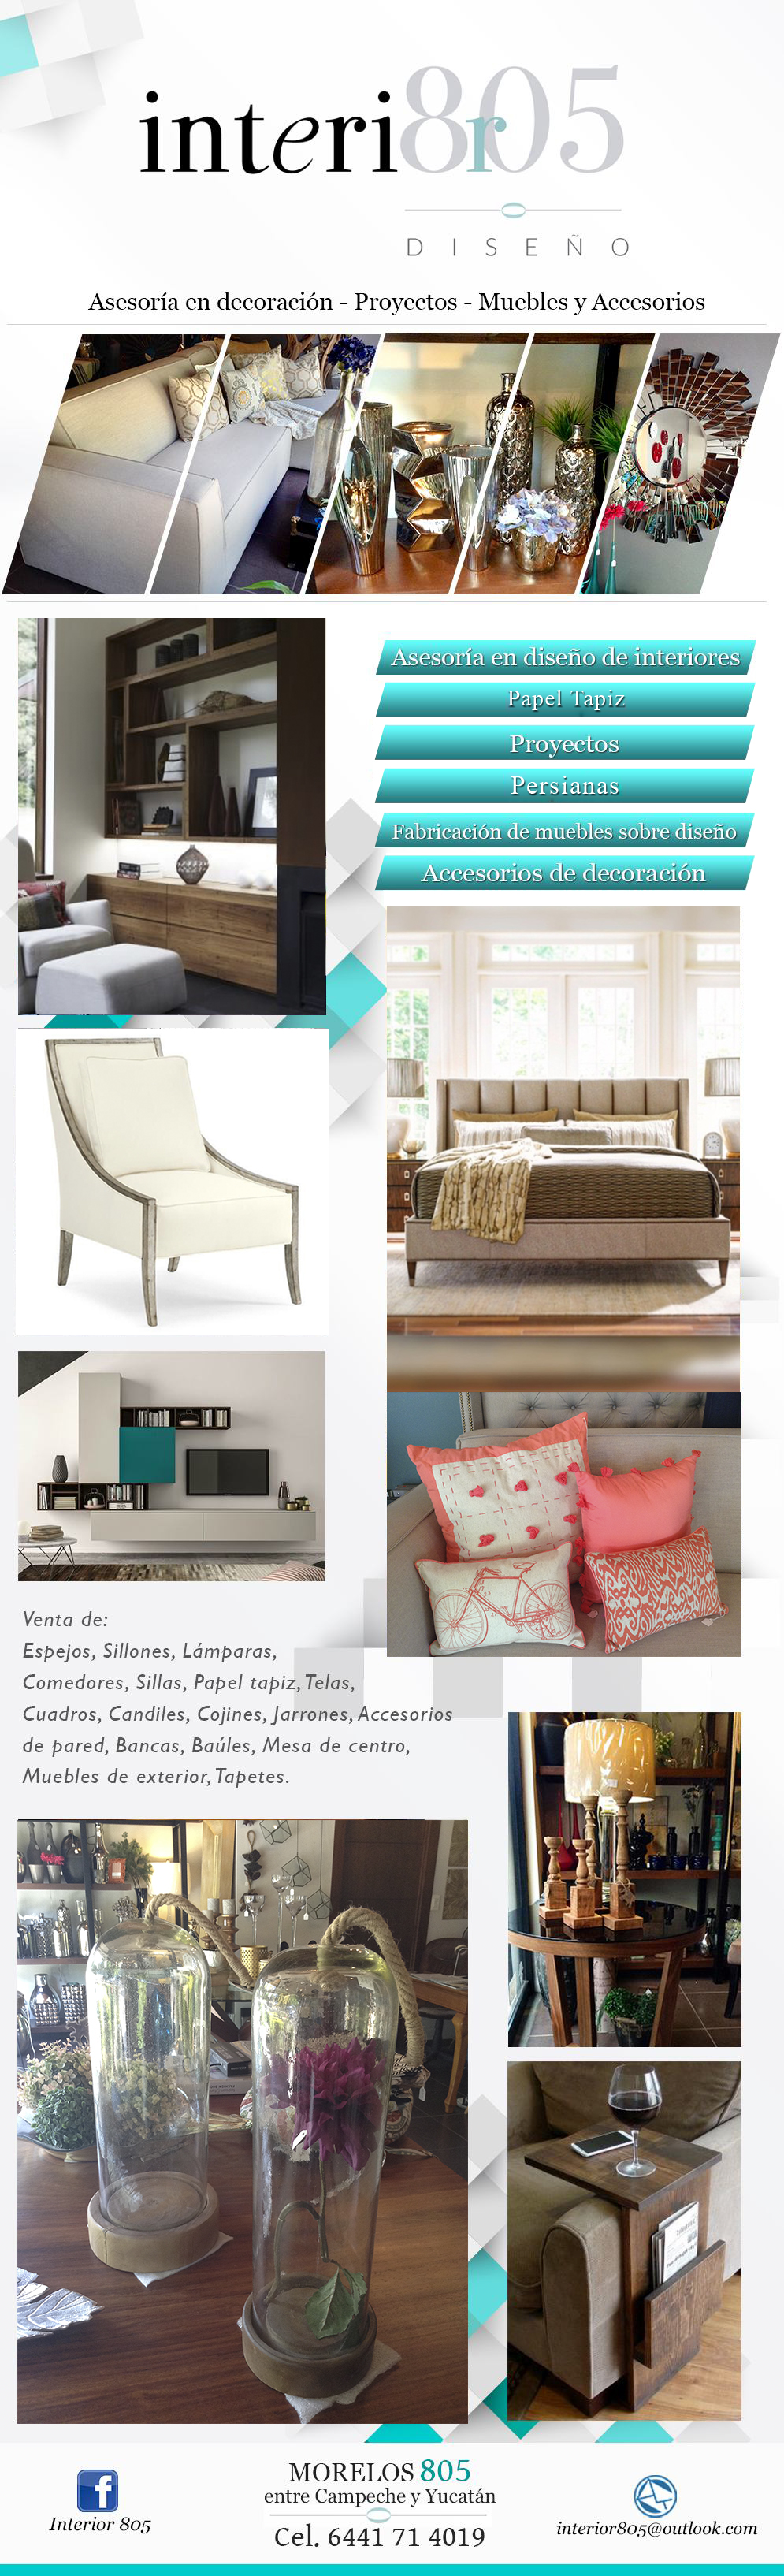 Interior 805-Asesoría en Diseño de Interiores, Proyectos, Fabricación de muebles sobre diseño, Accesorios de Decoración.                 